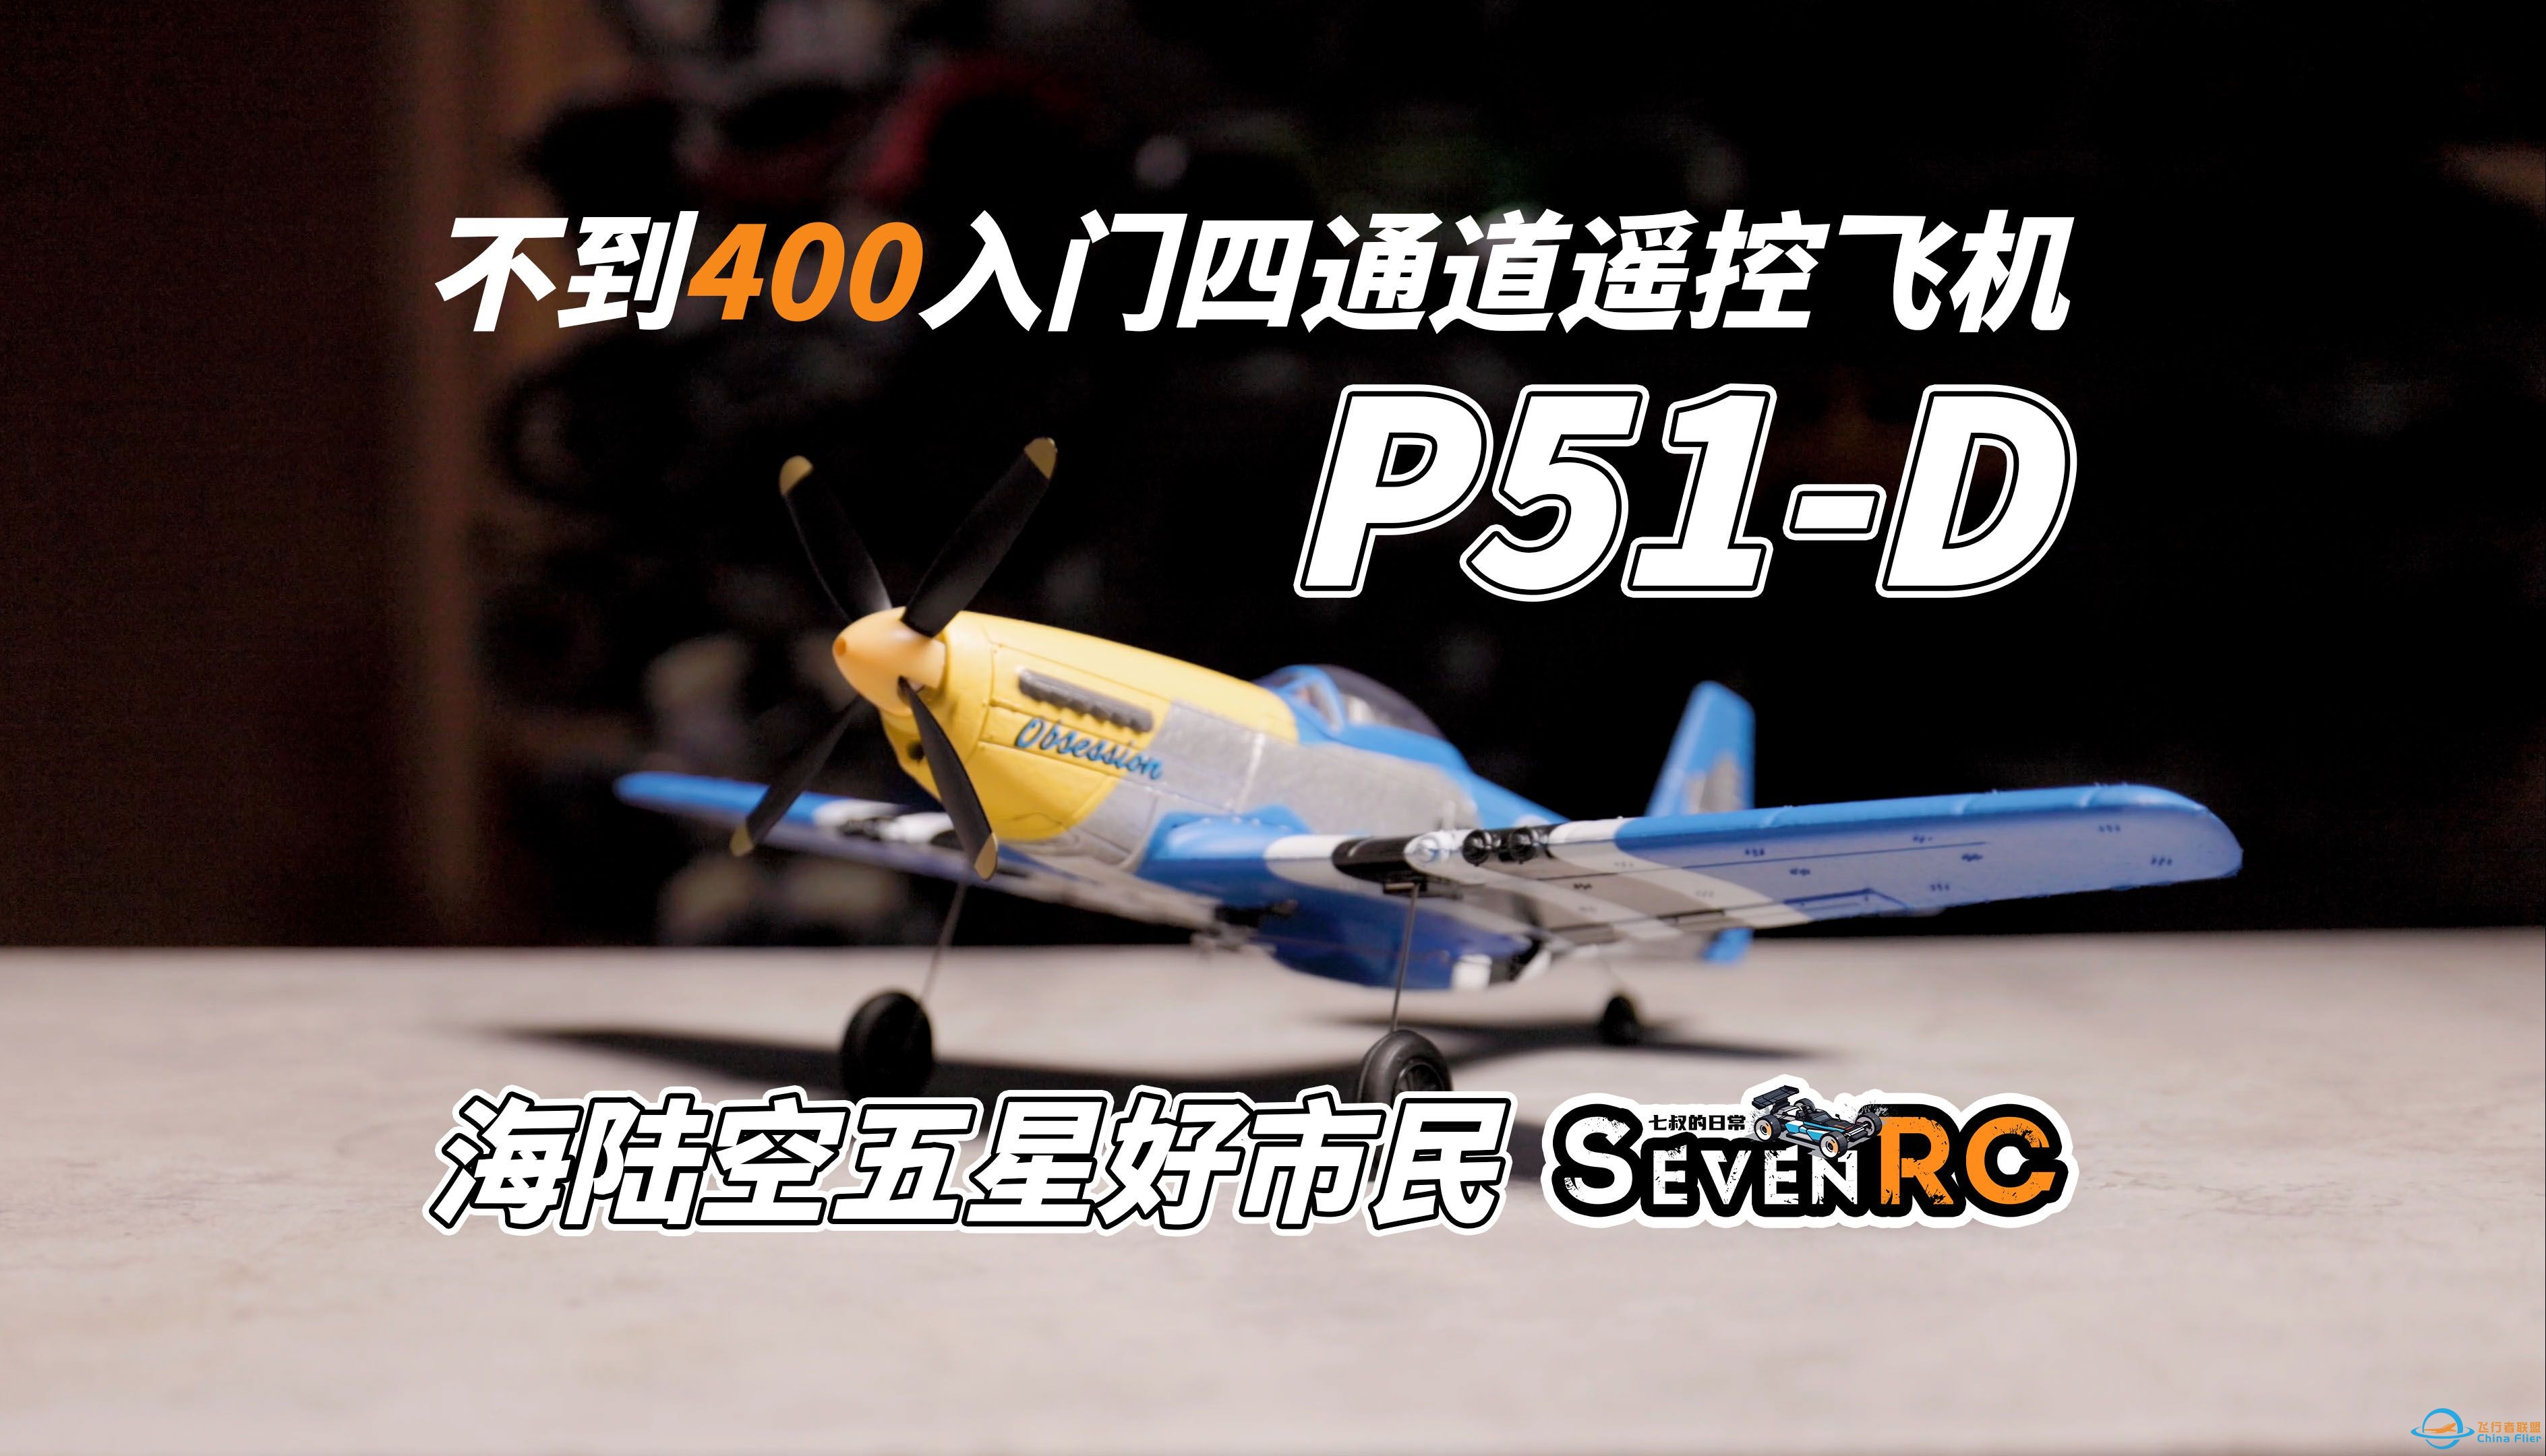 航模入门 欧兰斯 P51-D 四通战斗机 新手到进阶的小飞机 遥控模型 航模-1.jpg